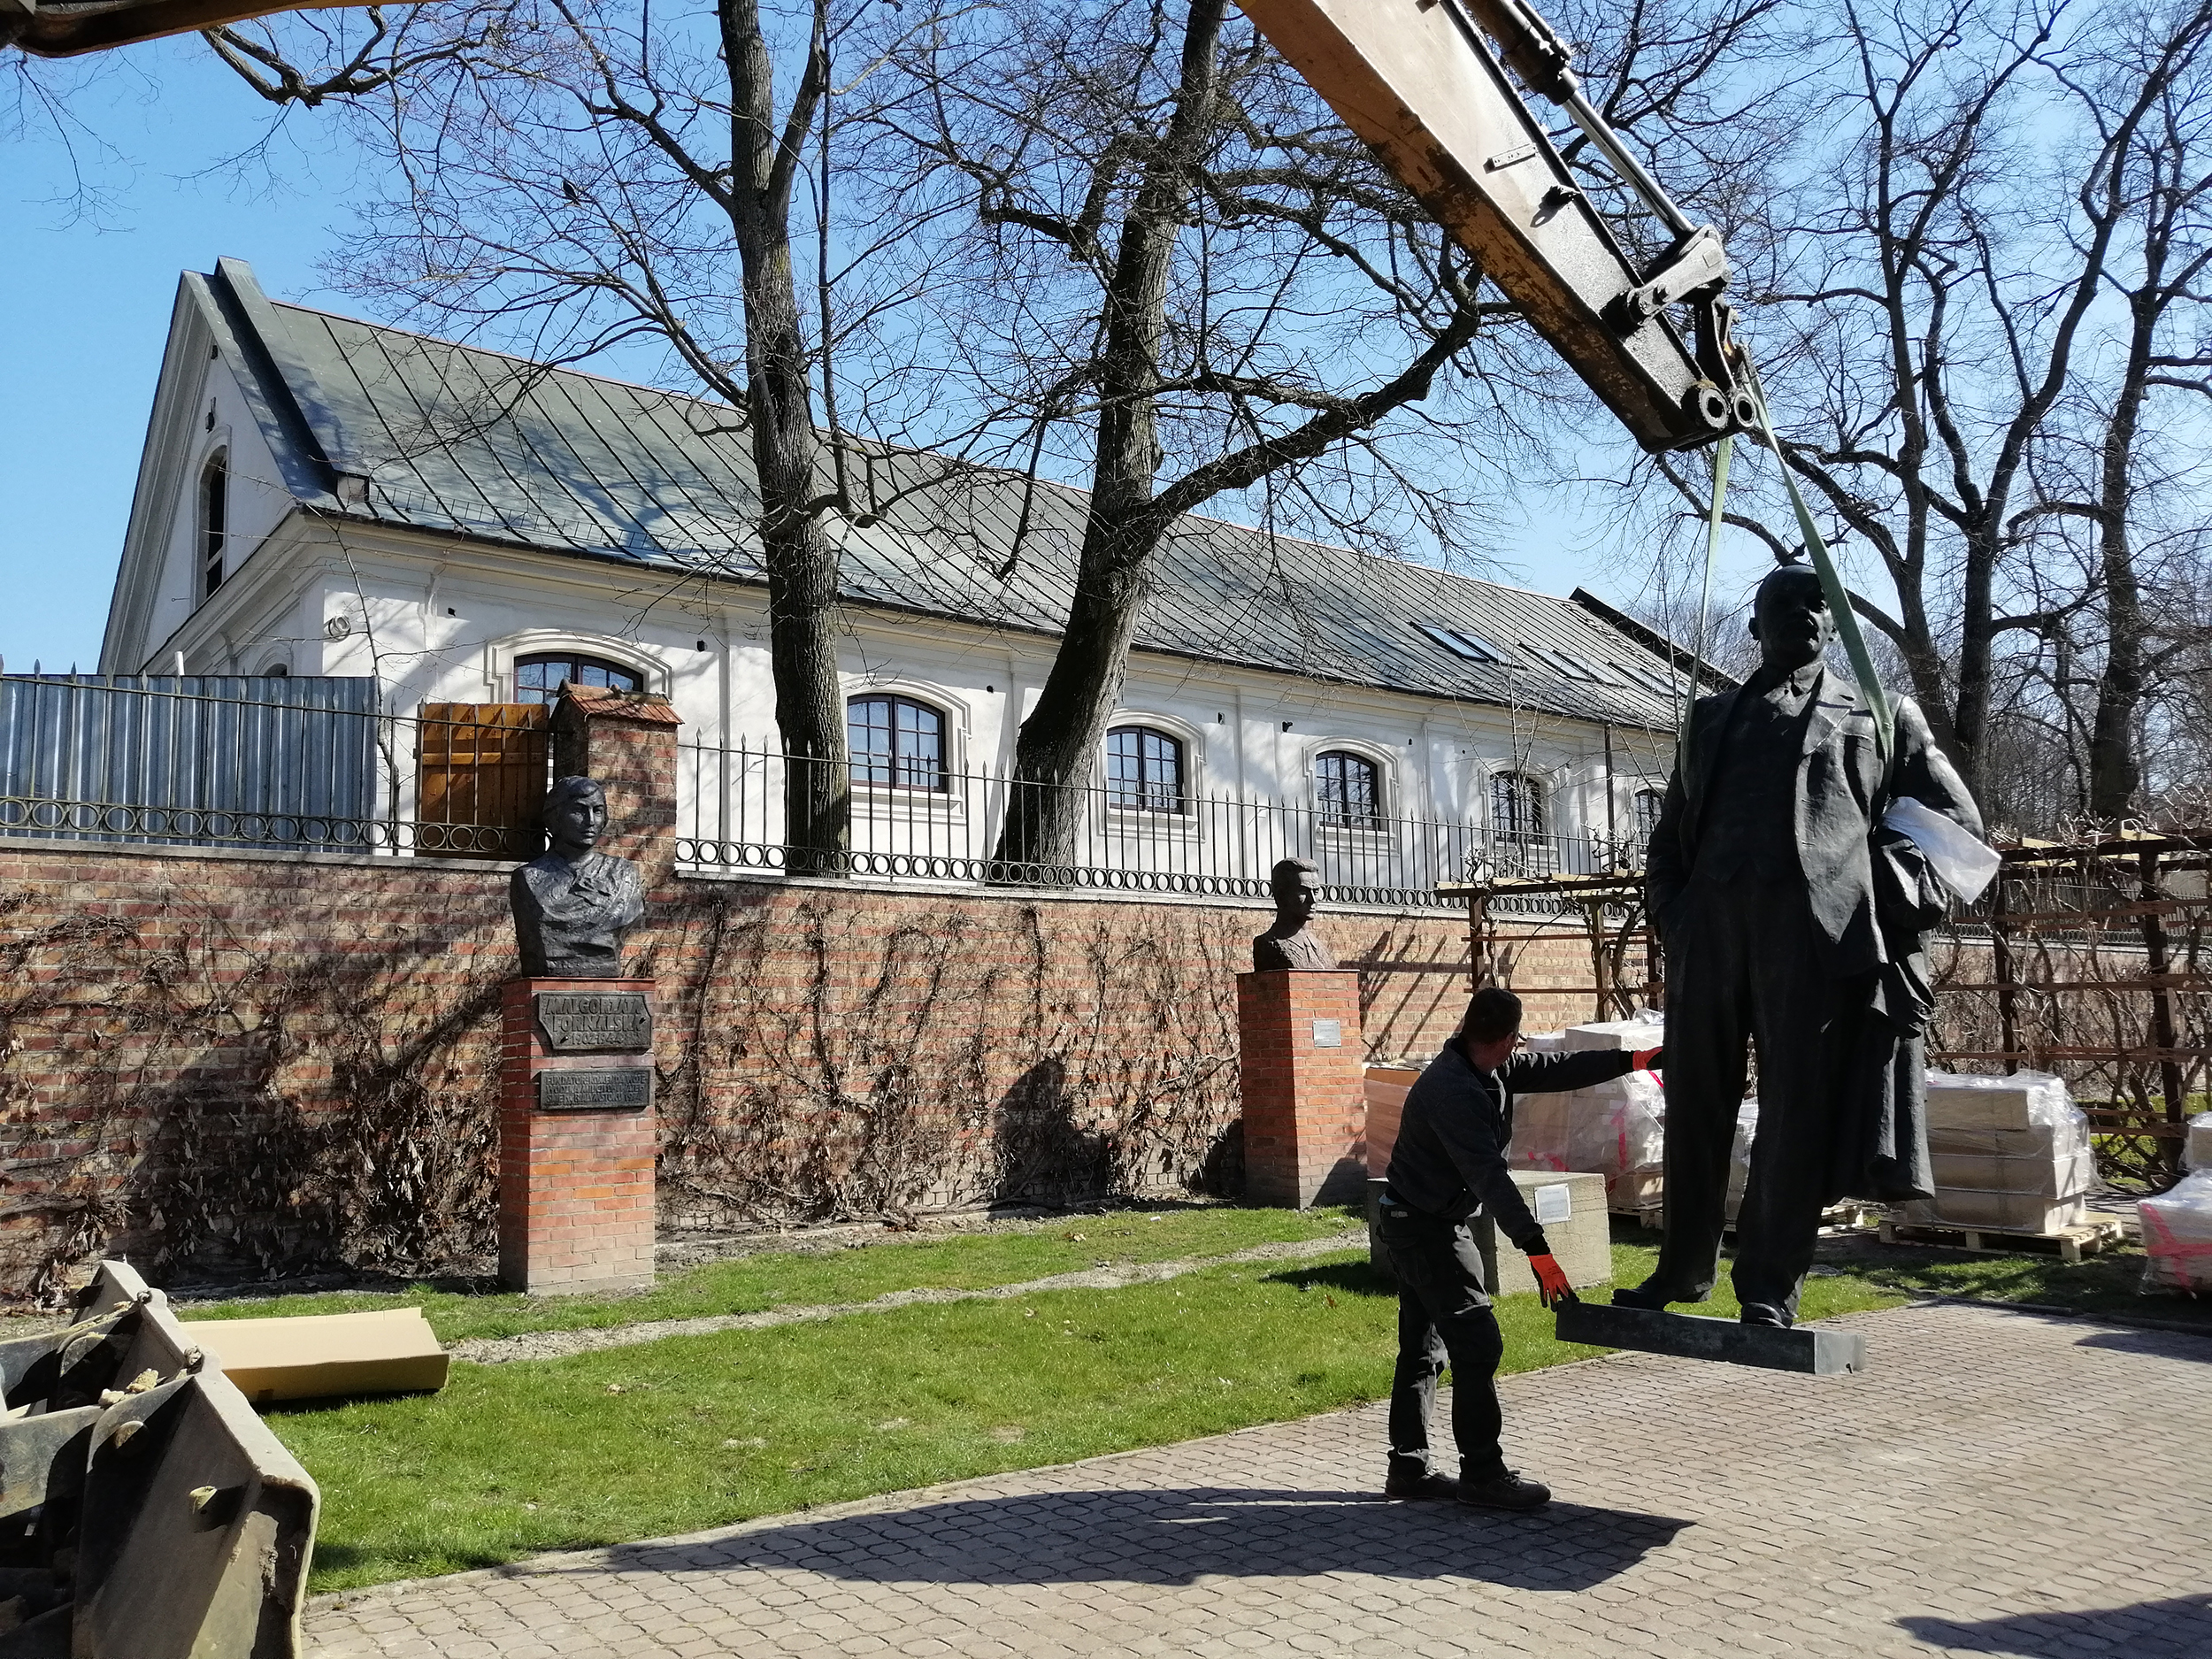 Fotografia. Pomnik Włodzimierza Lenina, postać całościowa. Rzeźba z brązu o wymiarach 260 x 120 x 75 cm uniesiona nad ziemię za pomocą pasów holowniczych. Po lewej stronie mężczyzna podtrzymujący rzeźbę.